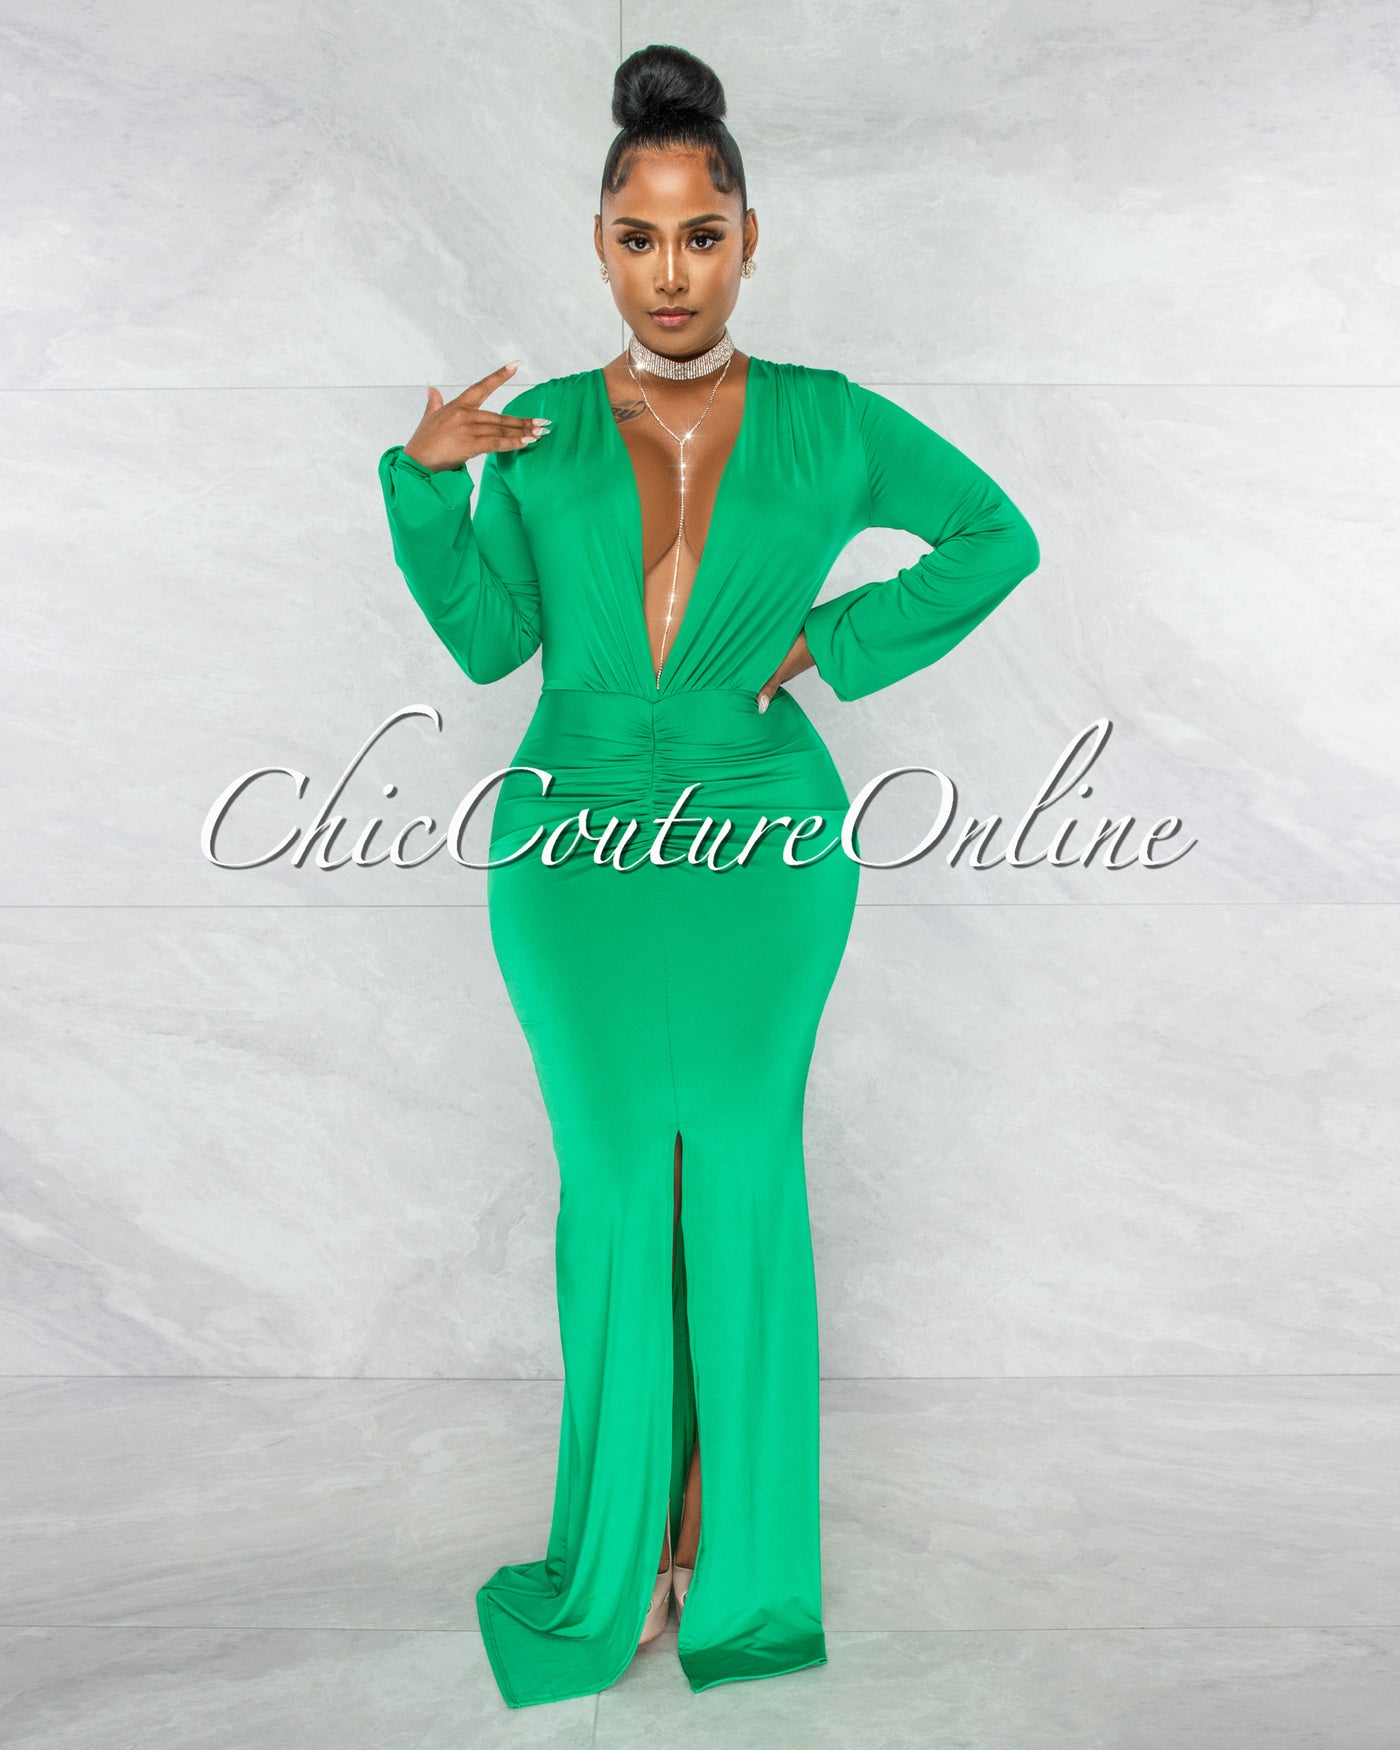 Solada Green V-Neck Long Sleeves Front Draped Maxi Dress